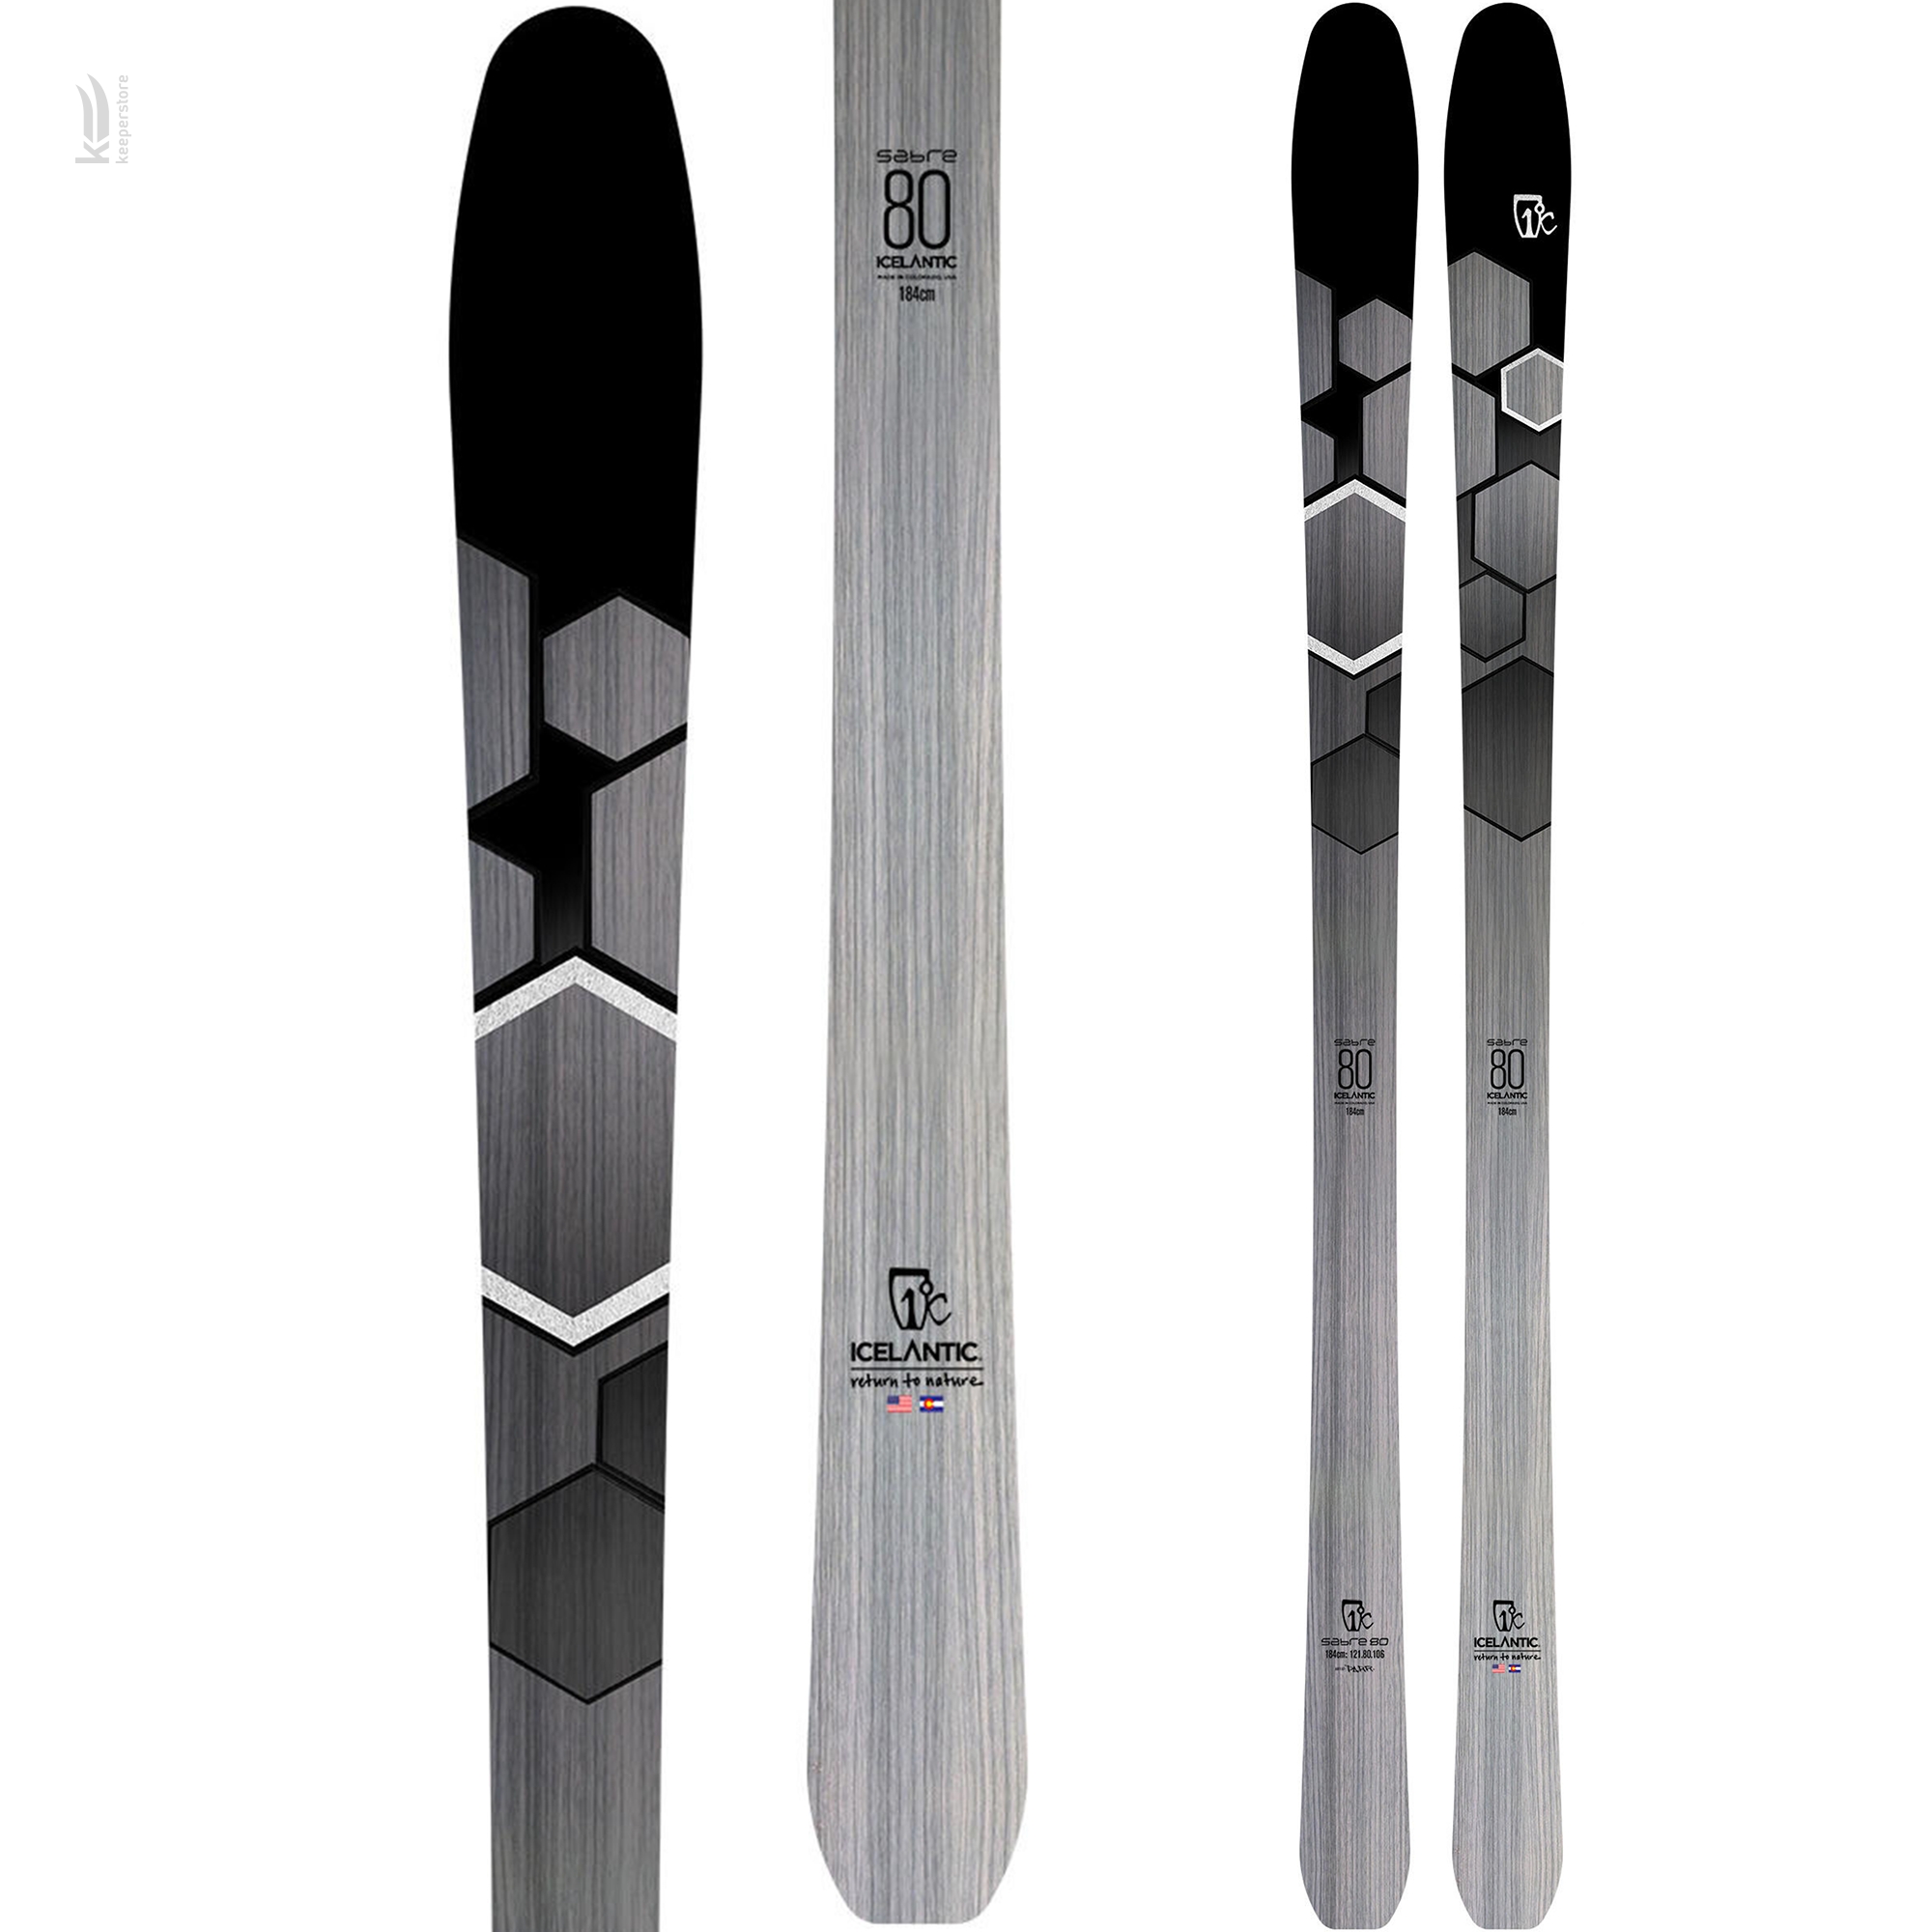 Отзывы лыжи для подготовленного склона Icelantic Sabre 80 2019/2020 174cm в Украине